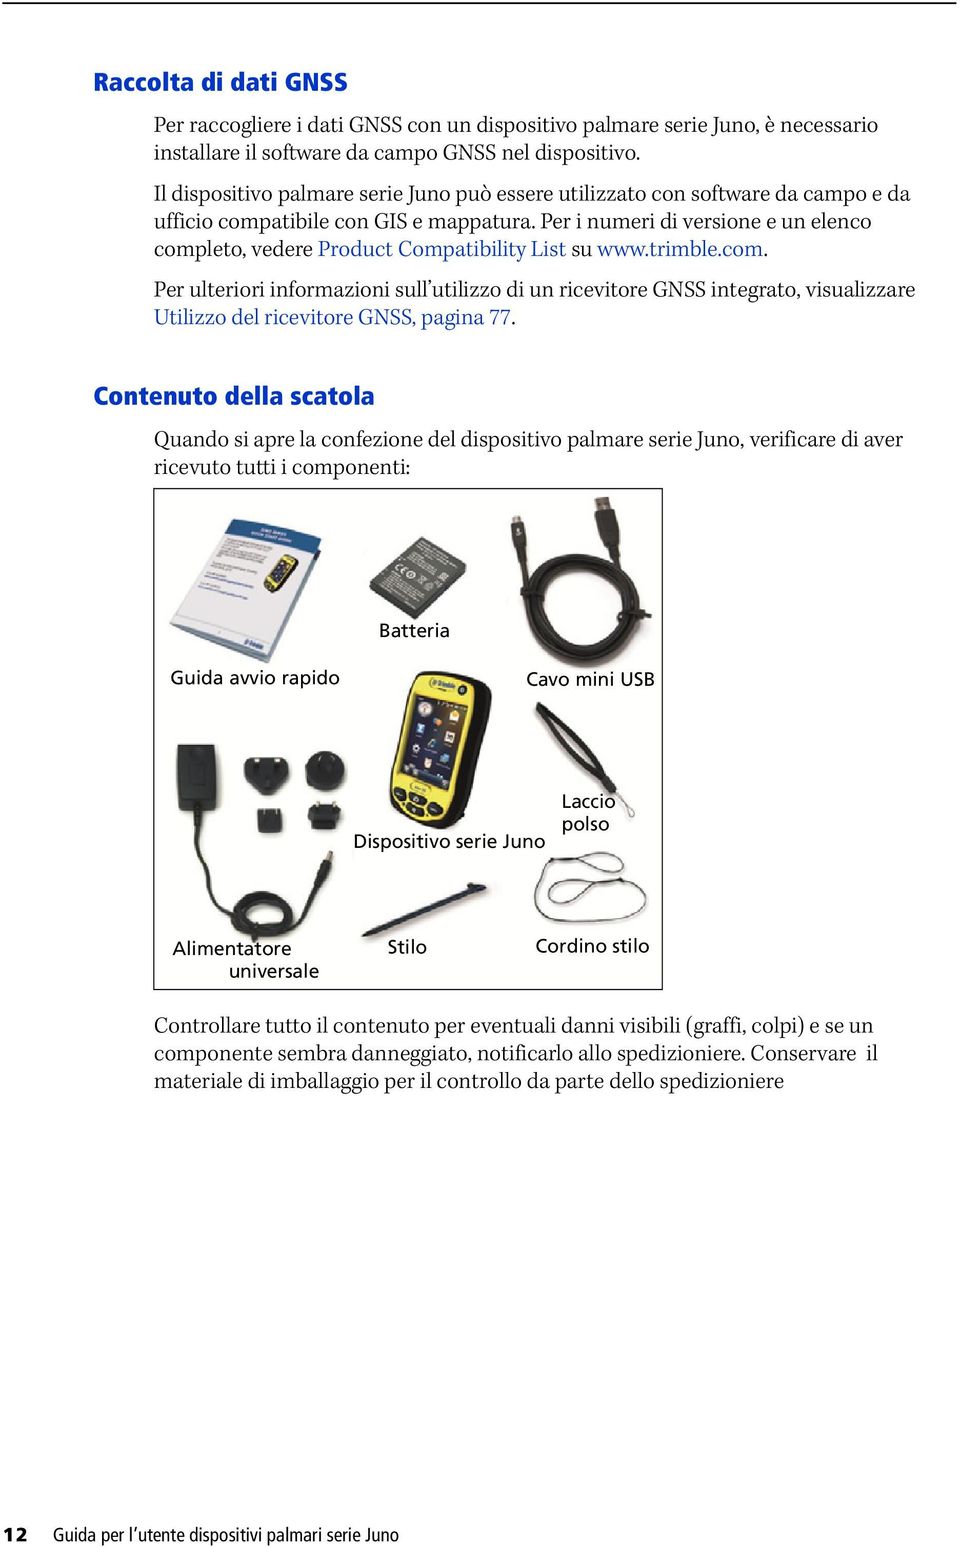 Per i numeri di versione e un elenco completo, vedere Product Compatibility List su www.trimble.com. Per ulteriori informazioni sull utilizzo di un ricevitore GNSS integrato, visualizzare Utilizzo del ricevitore GNSS, pagina 77.